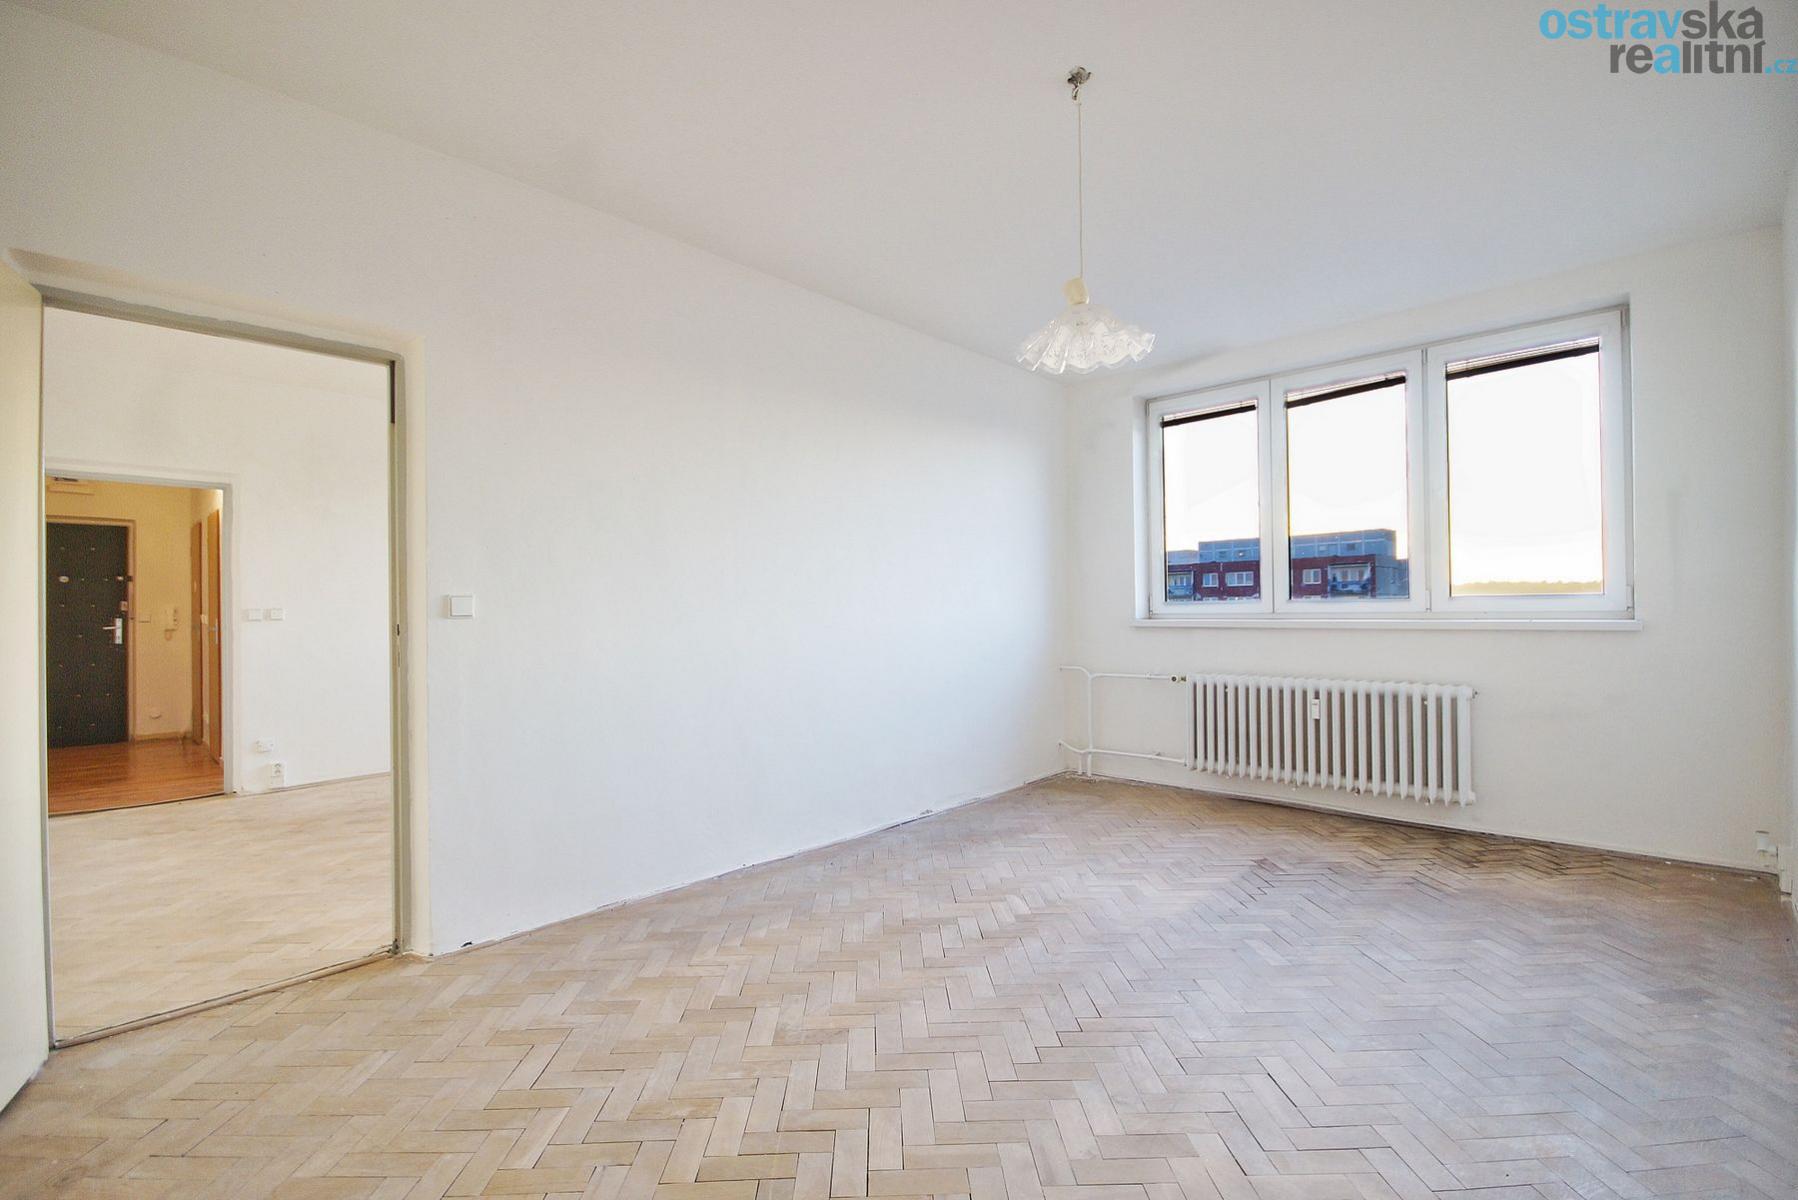 Prodej, byt 2+1 s balkónem, Hrabůvka, ul. A. Kučery, 57m2, osobní vlastnictví